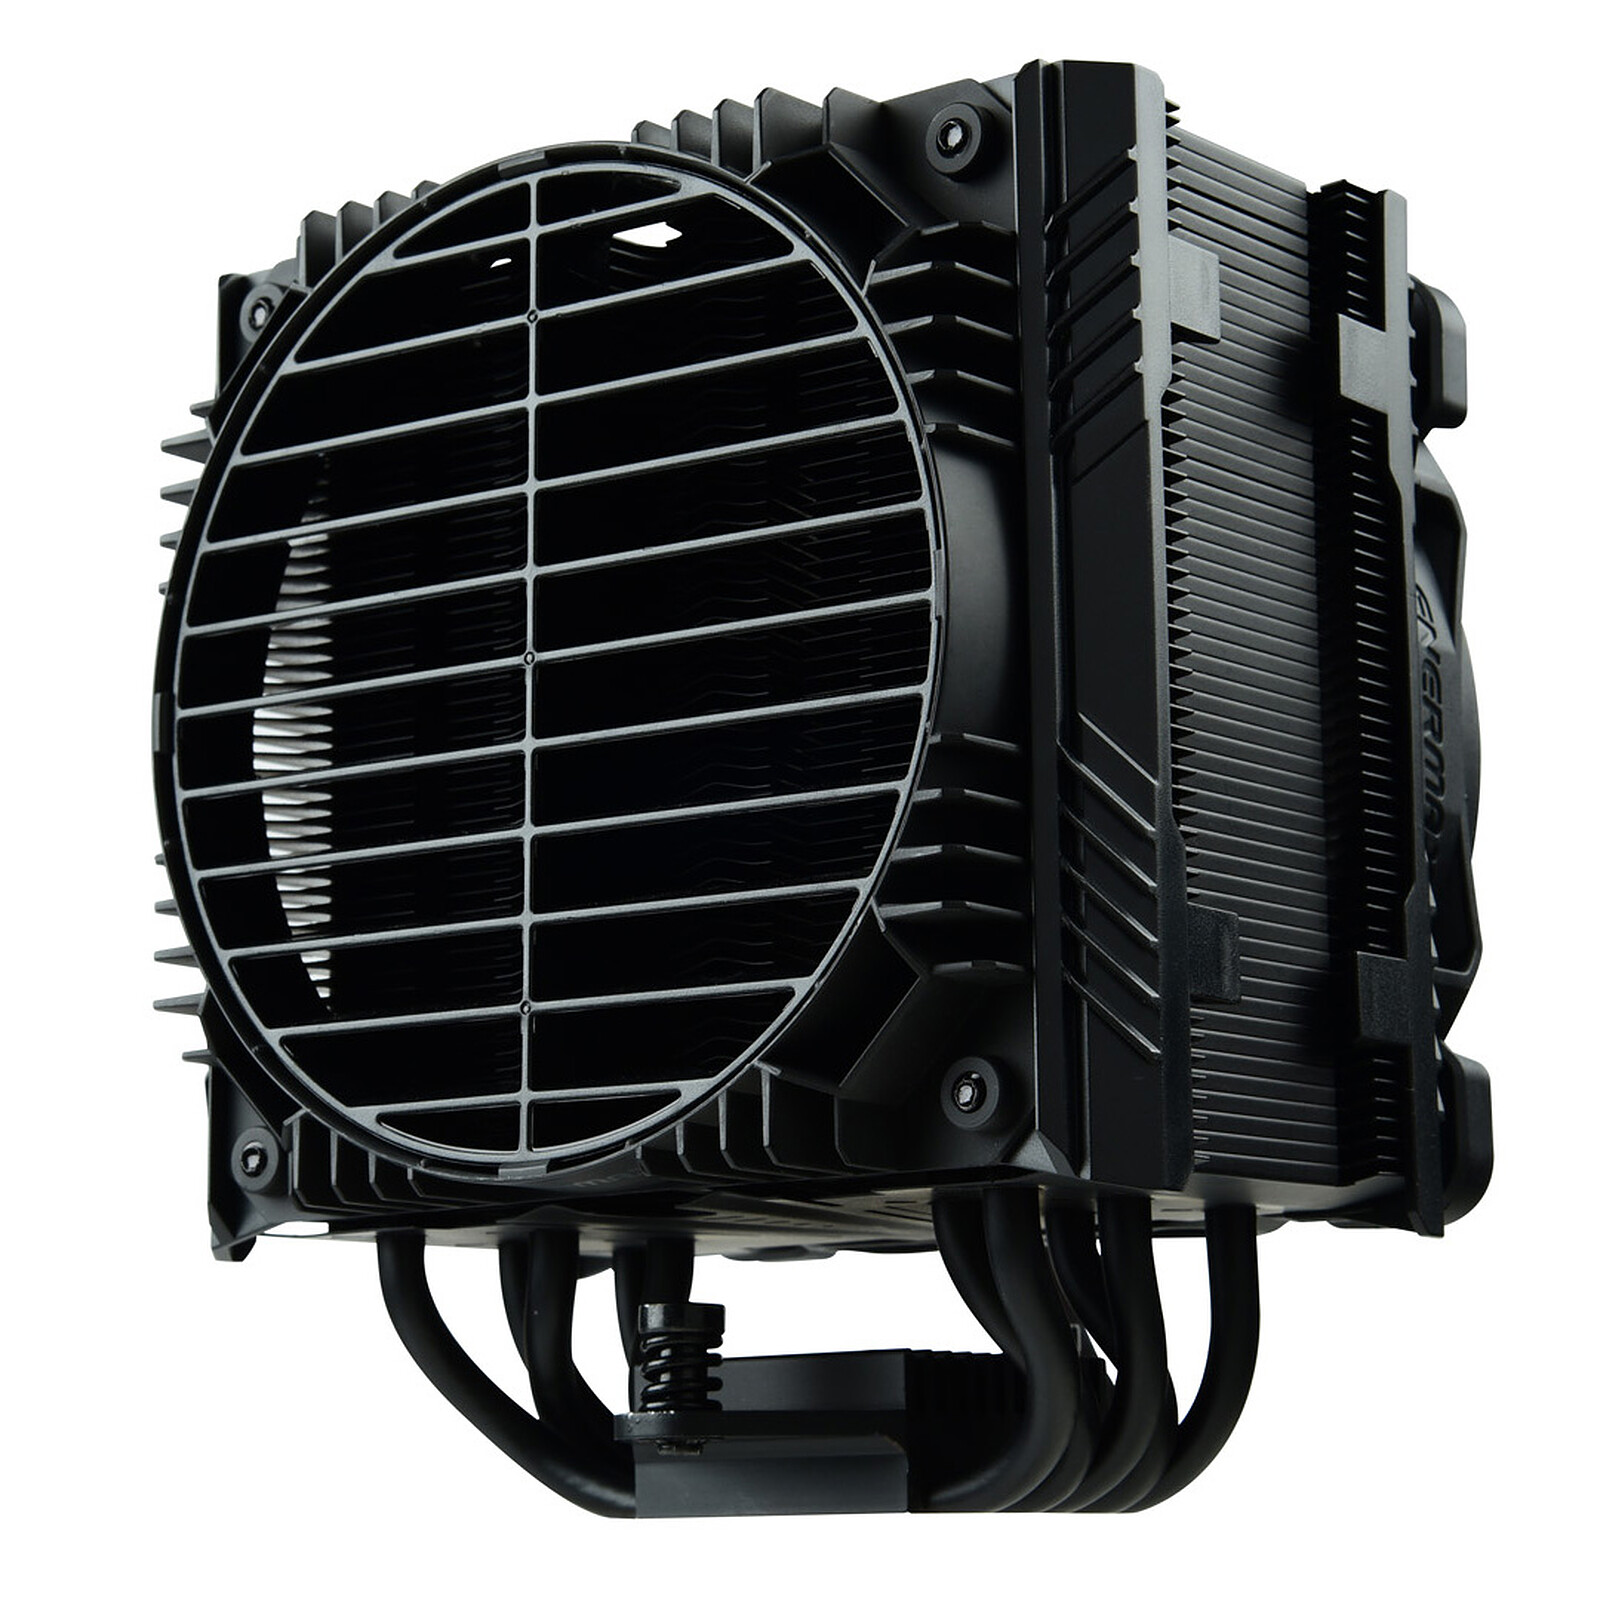 Enermax ETS-N31 - Ventilateur processeur - Garantie 3 ans LDLC